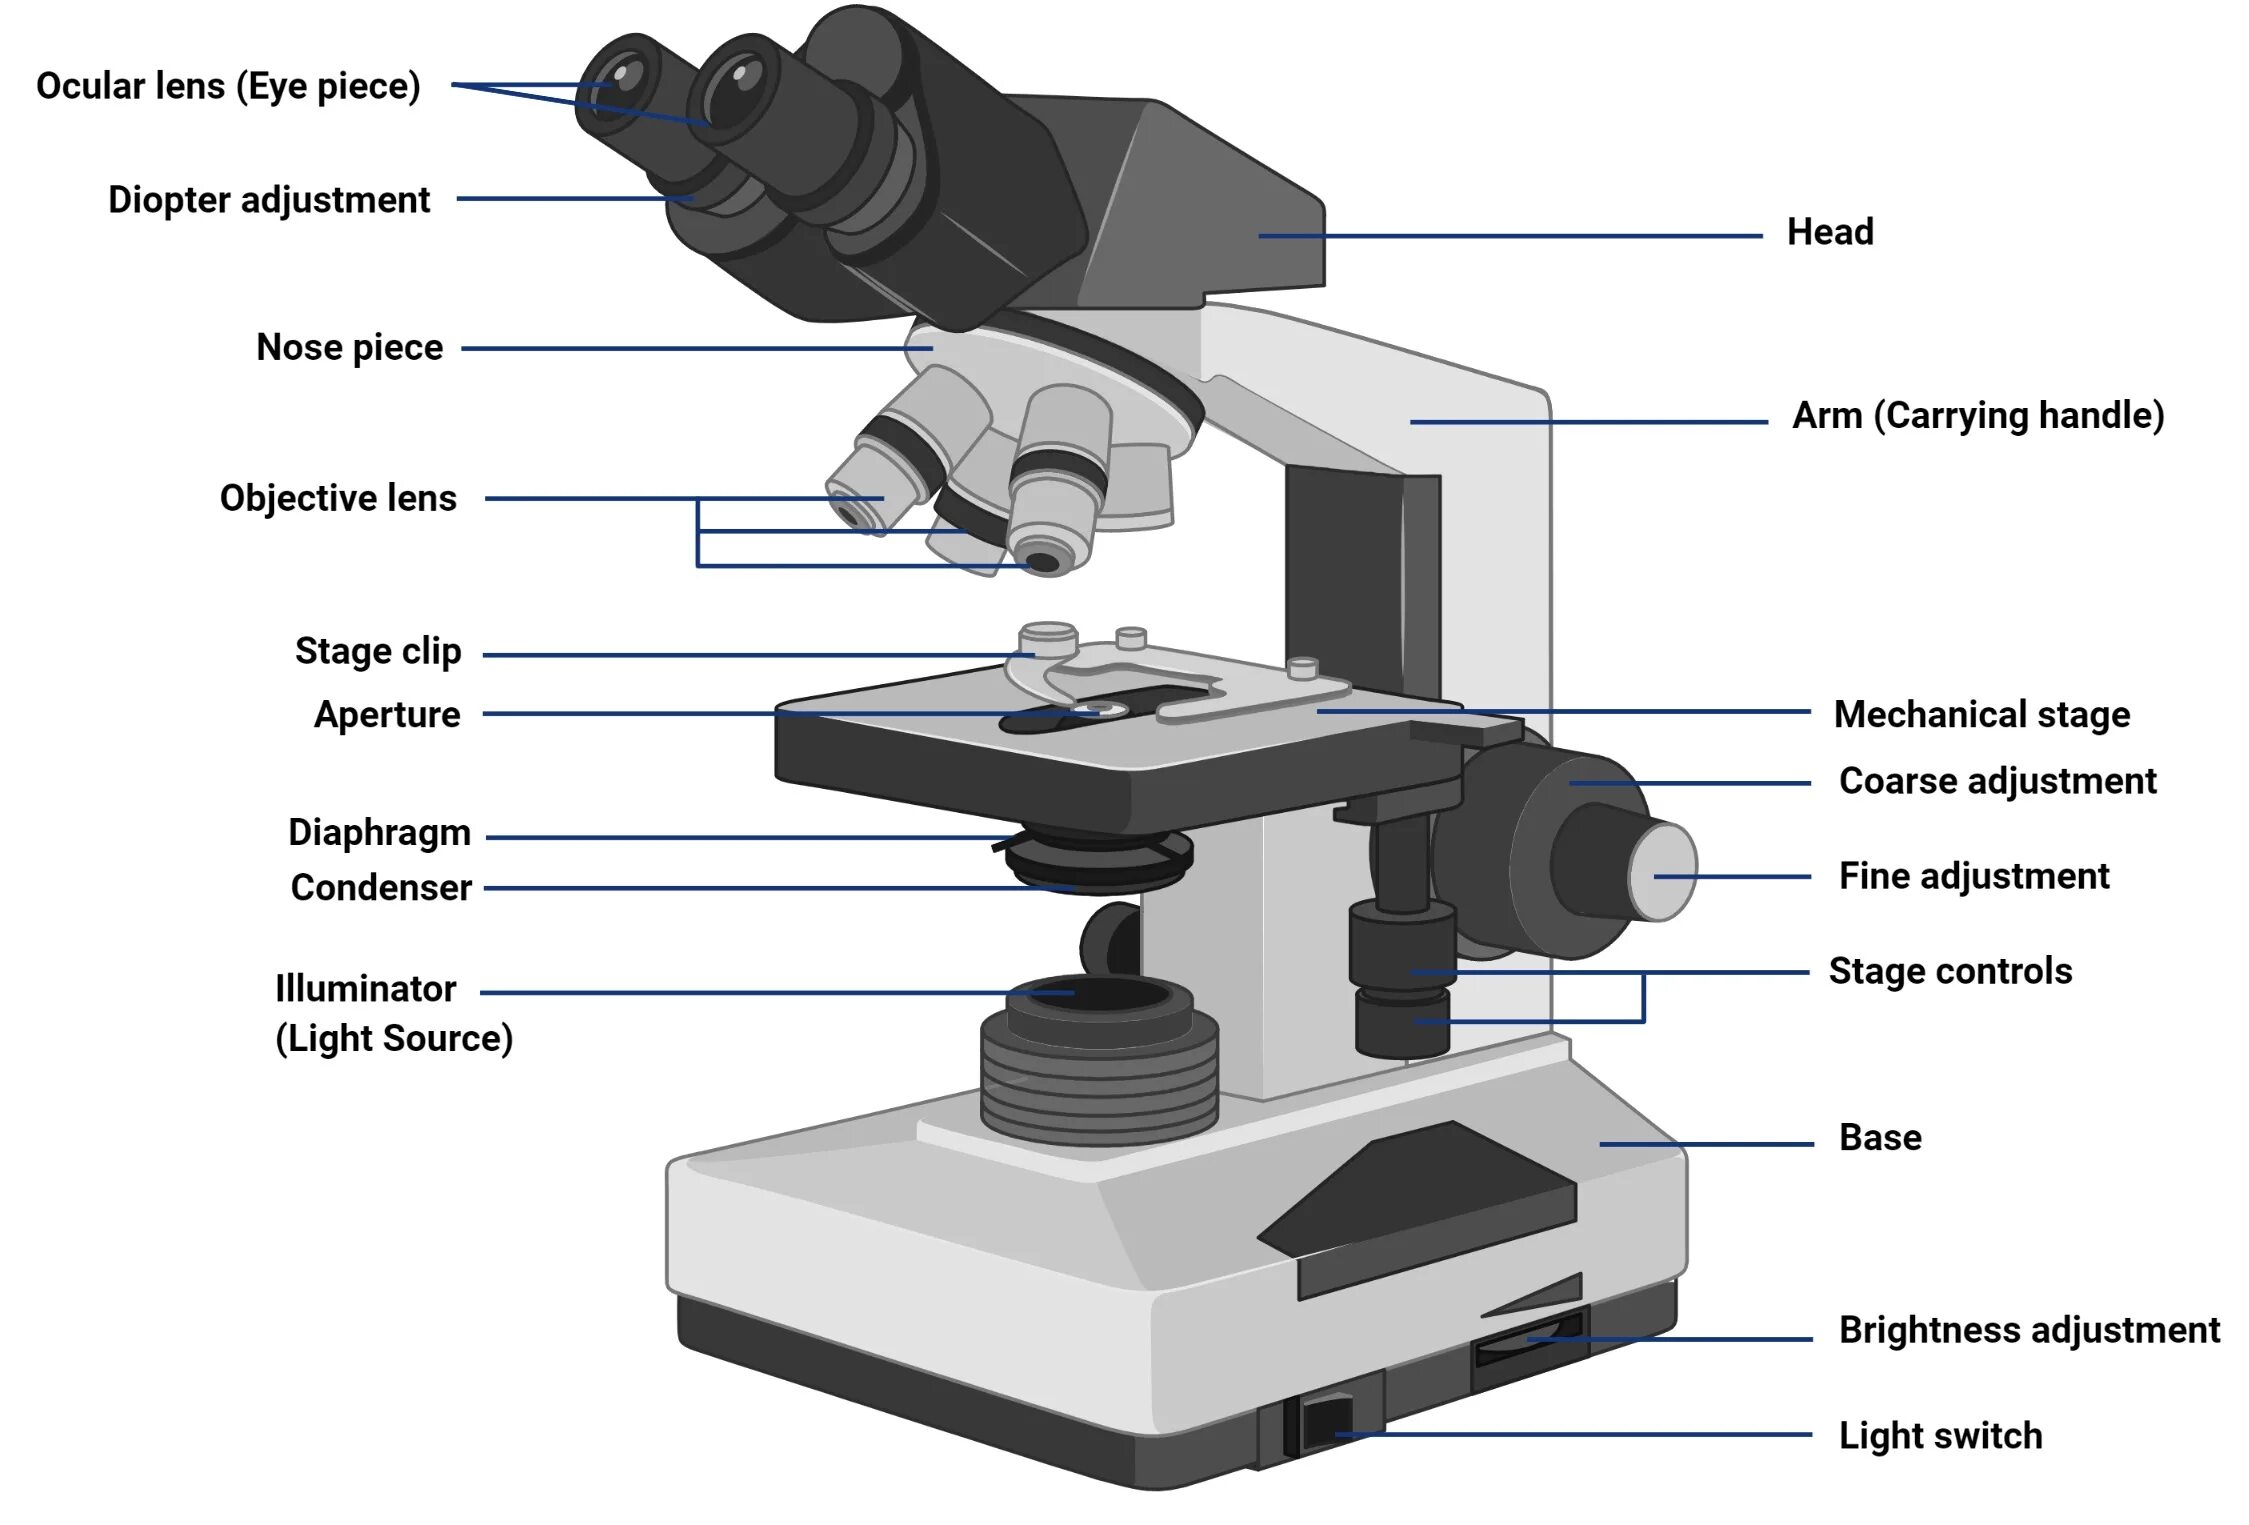 Какую функцию выполняет основание микроскопа при работе. Микроскоп p5000i Digital Analysis Microscope. Микроскоп с2108. Строение микроскопа макровинт. Строение микроскопа Микмед.